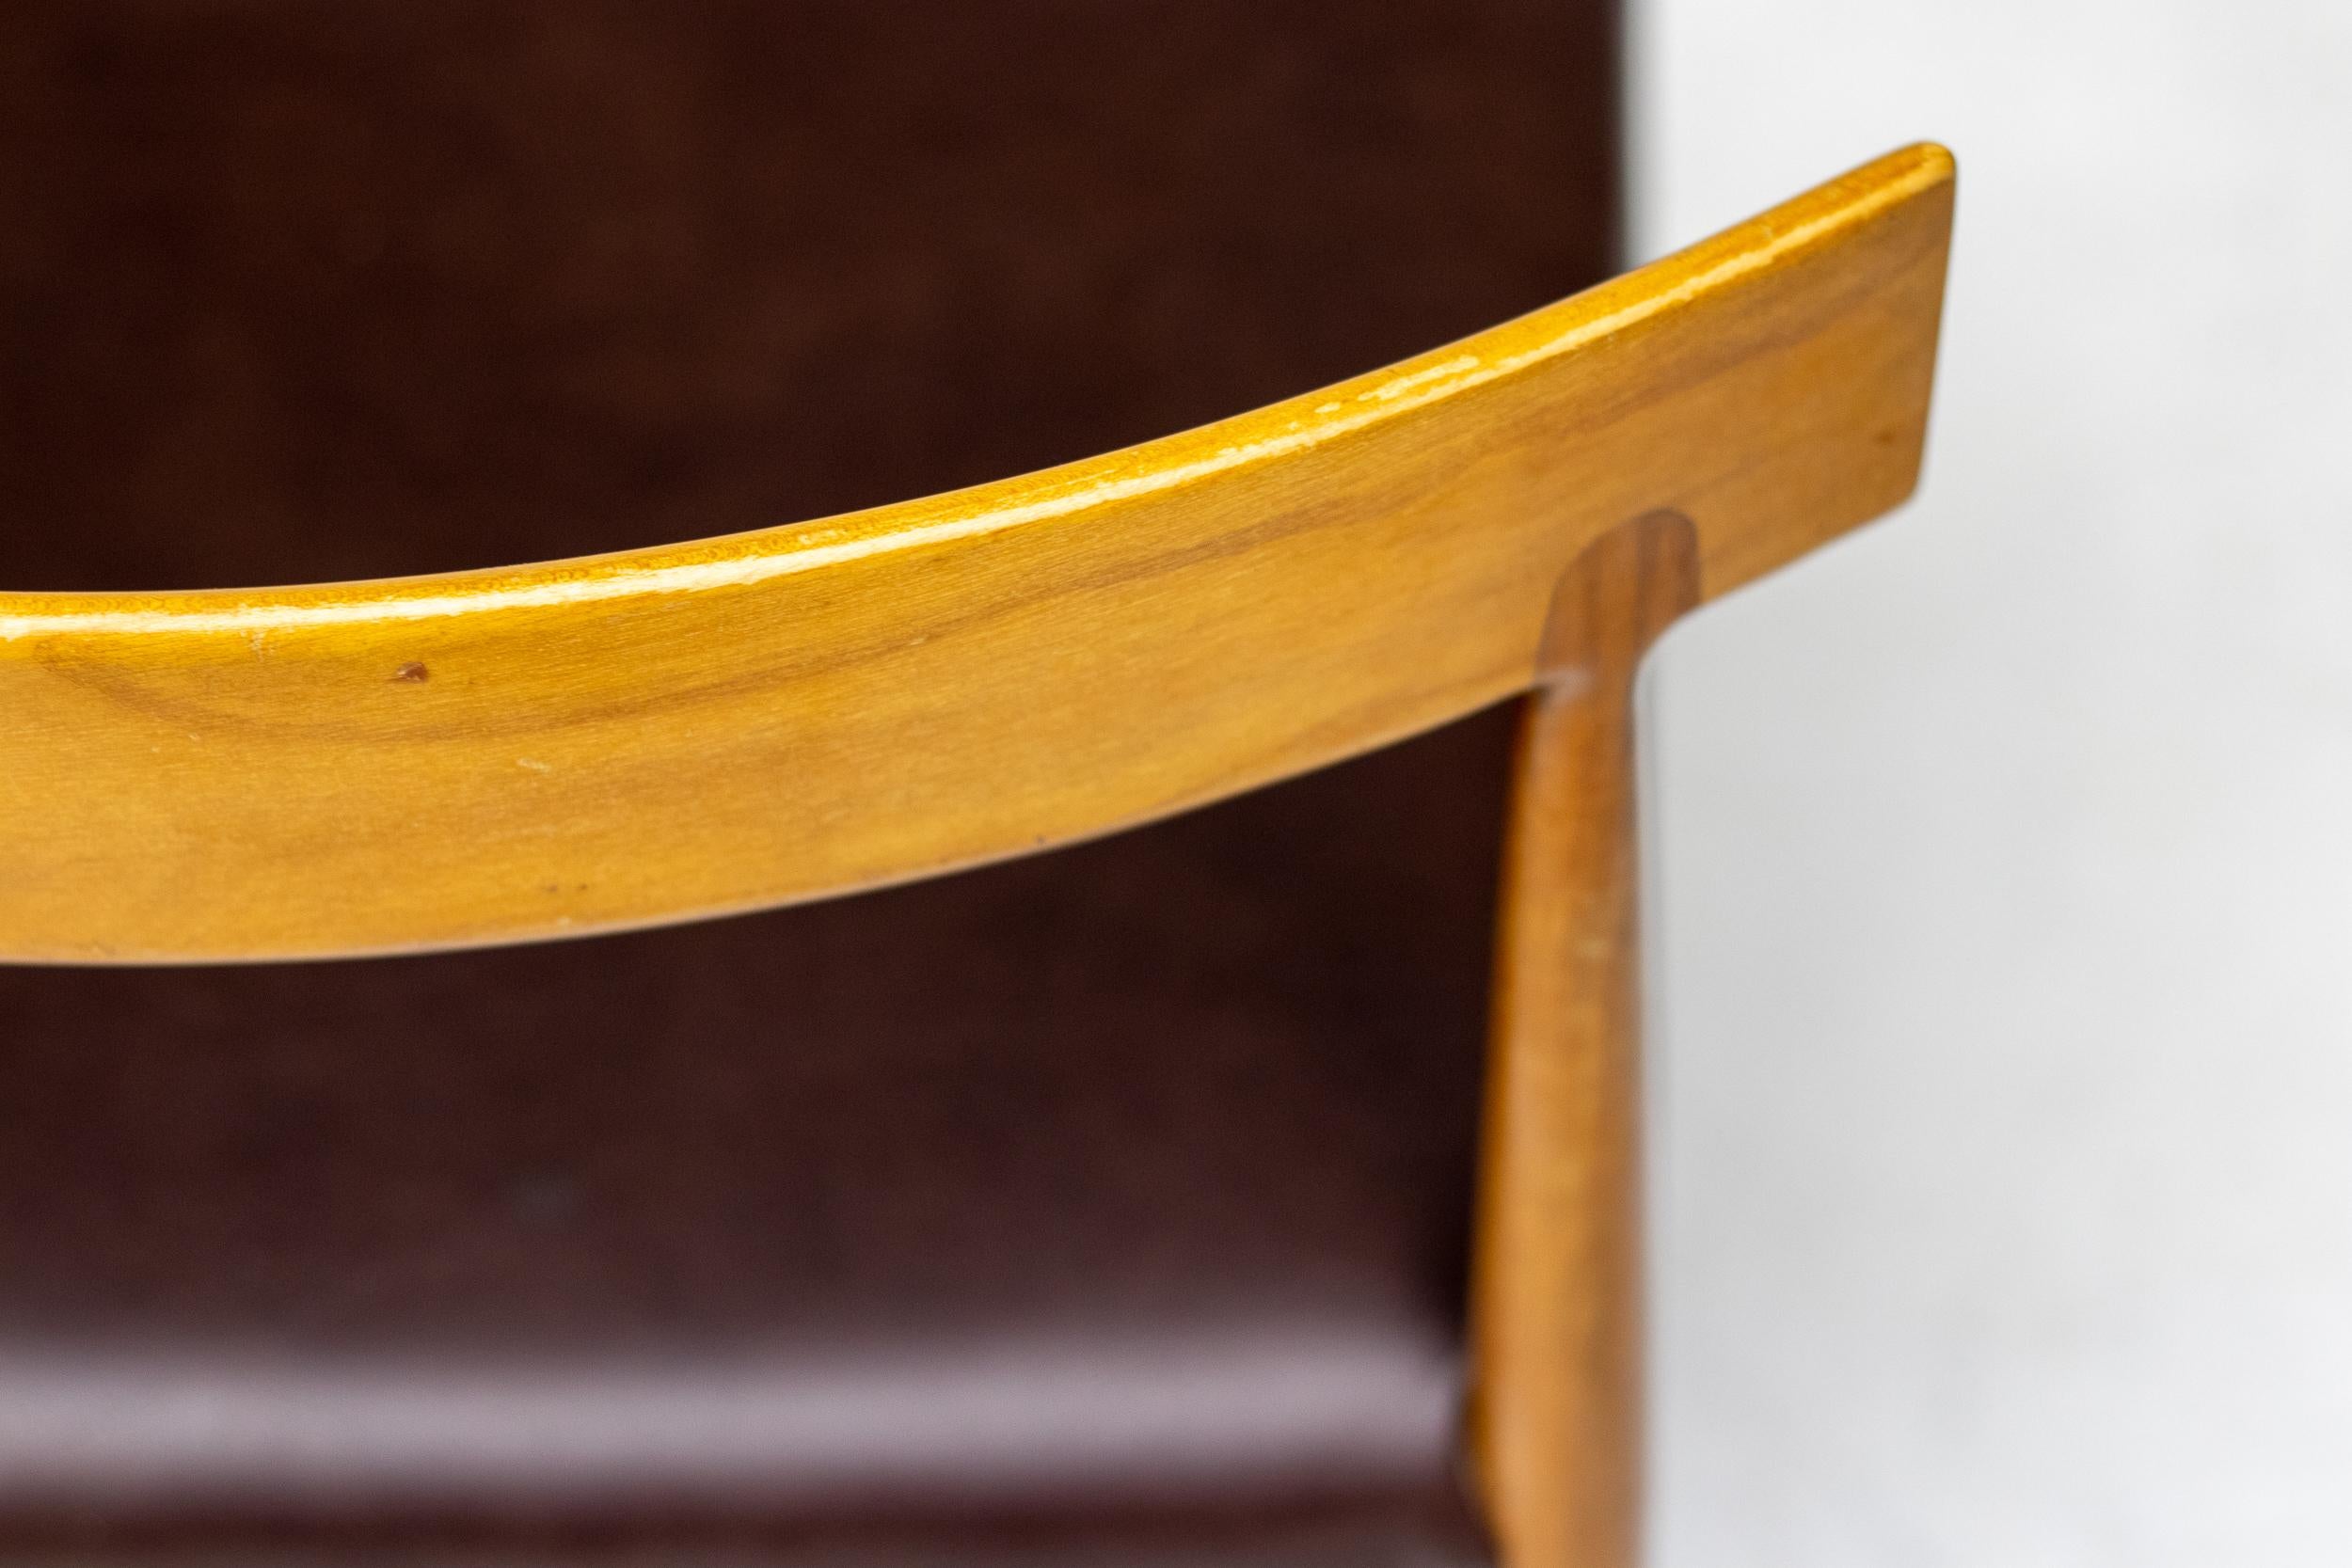 Einzigartiger Satz von 6 wunderschön gearbeiteten skandinavischen Esszimmerstühlen aus Teakholz und Naugahyde in absolutem Originalzustand. Die Rückenlehne der Stühle hat ein wunderschönes Konstruktionsdetail, wie abgebildet, ähnlich den Entwürfen